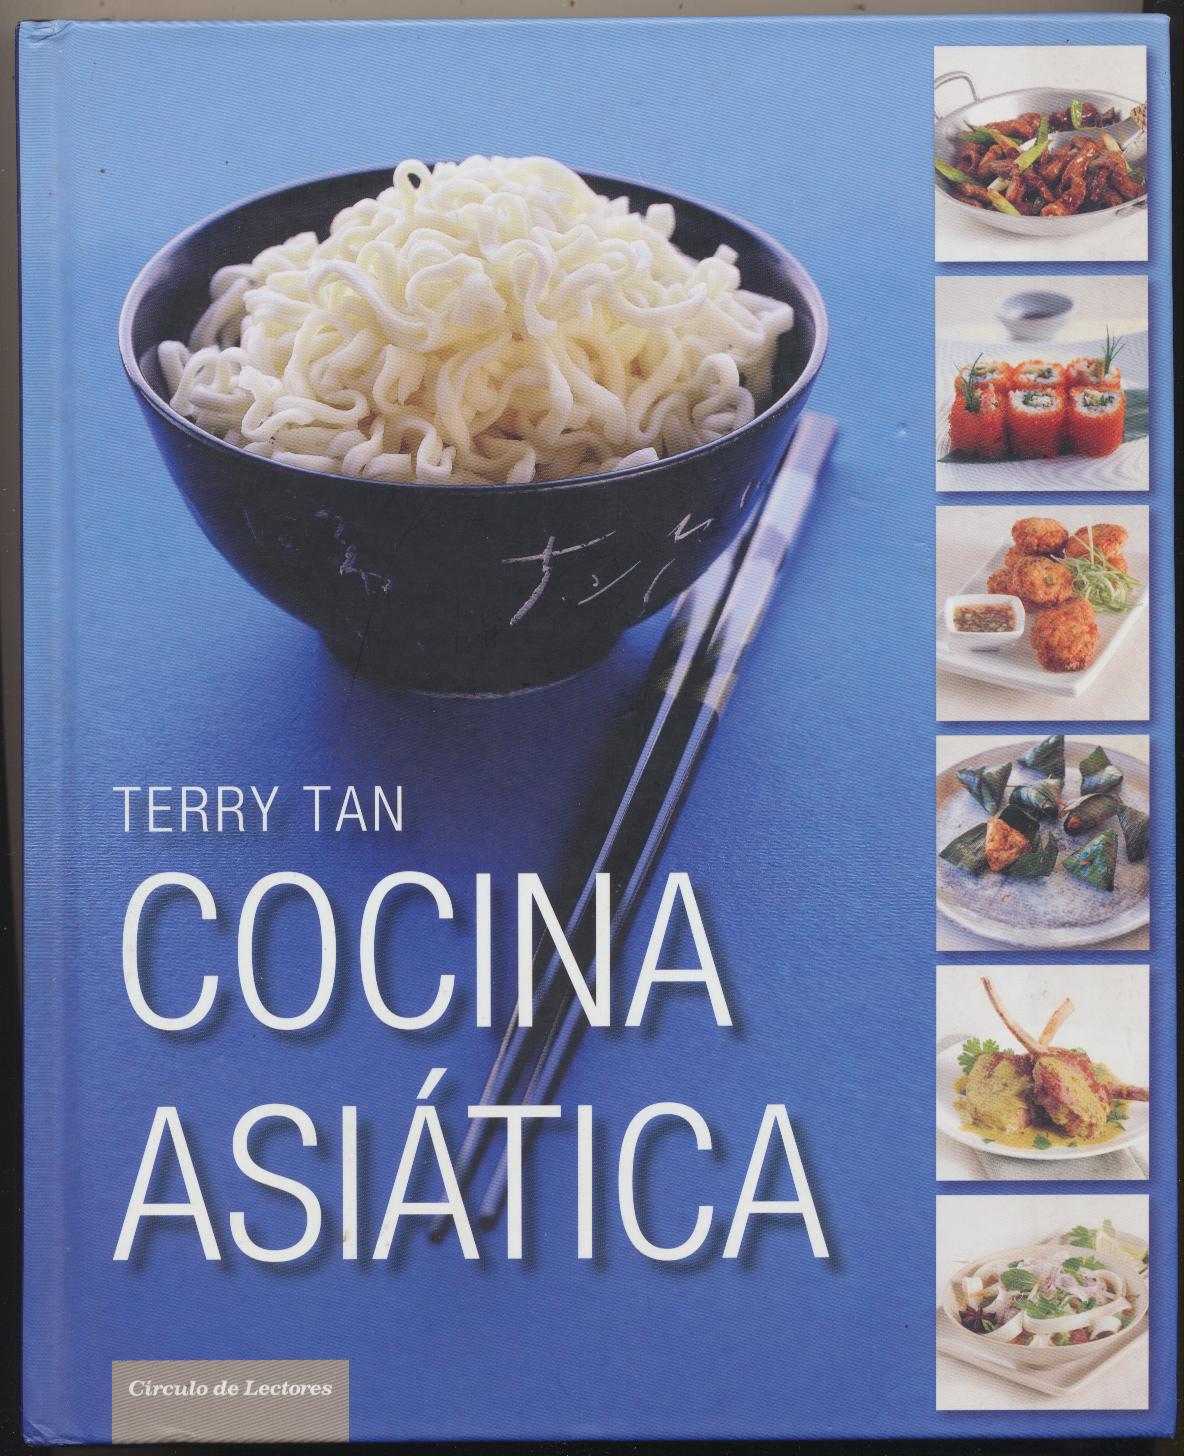 Terry Tan. Cocina Asiática. Círculo de lectores